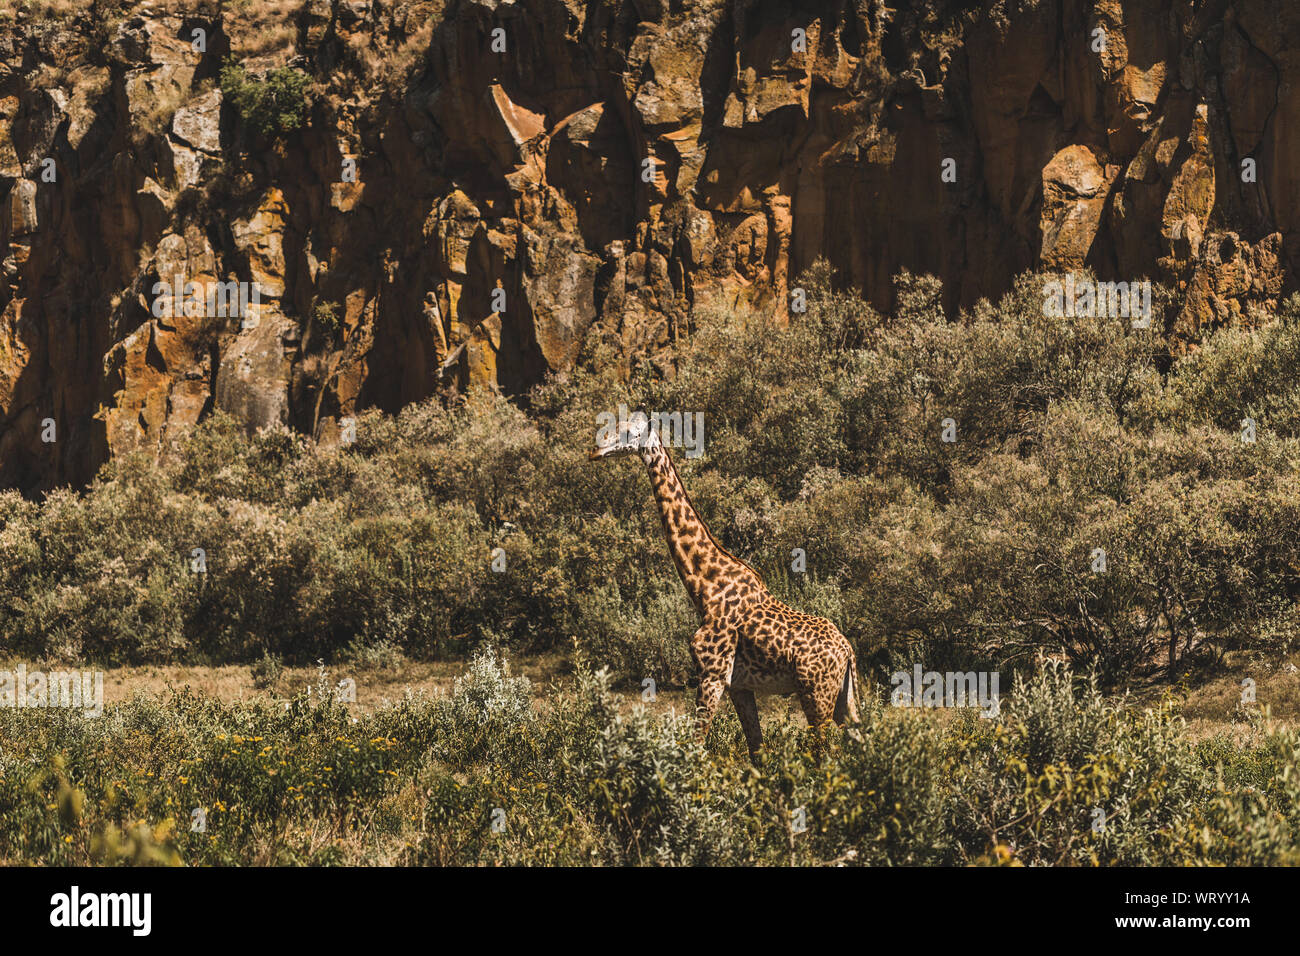 Une girafe se cachant dans des buissons. Safari au Kenya, Afrique. La nature et les animaux sauvages. Voyager en savane africaine. Banque D'Images